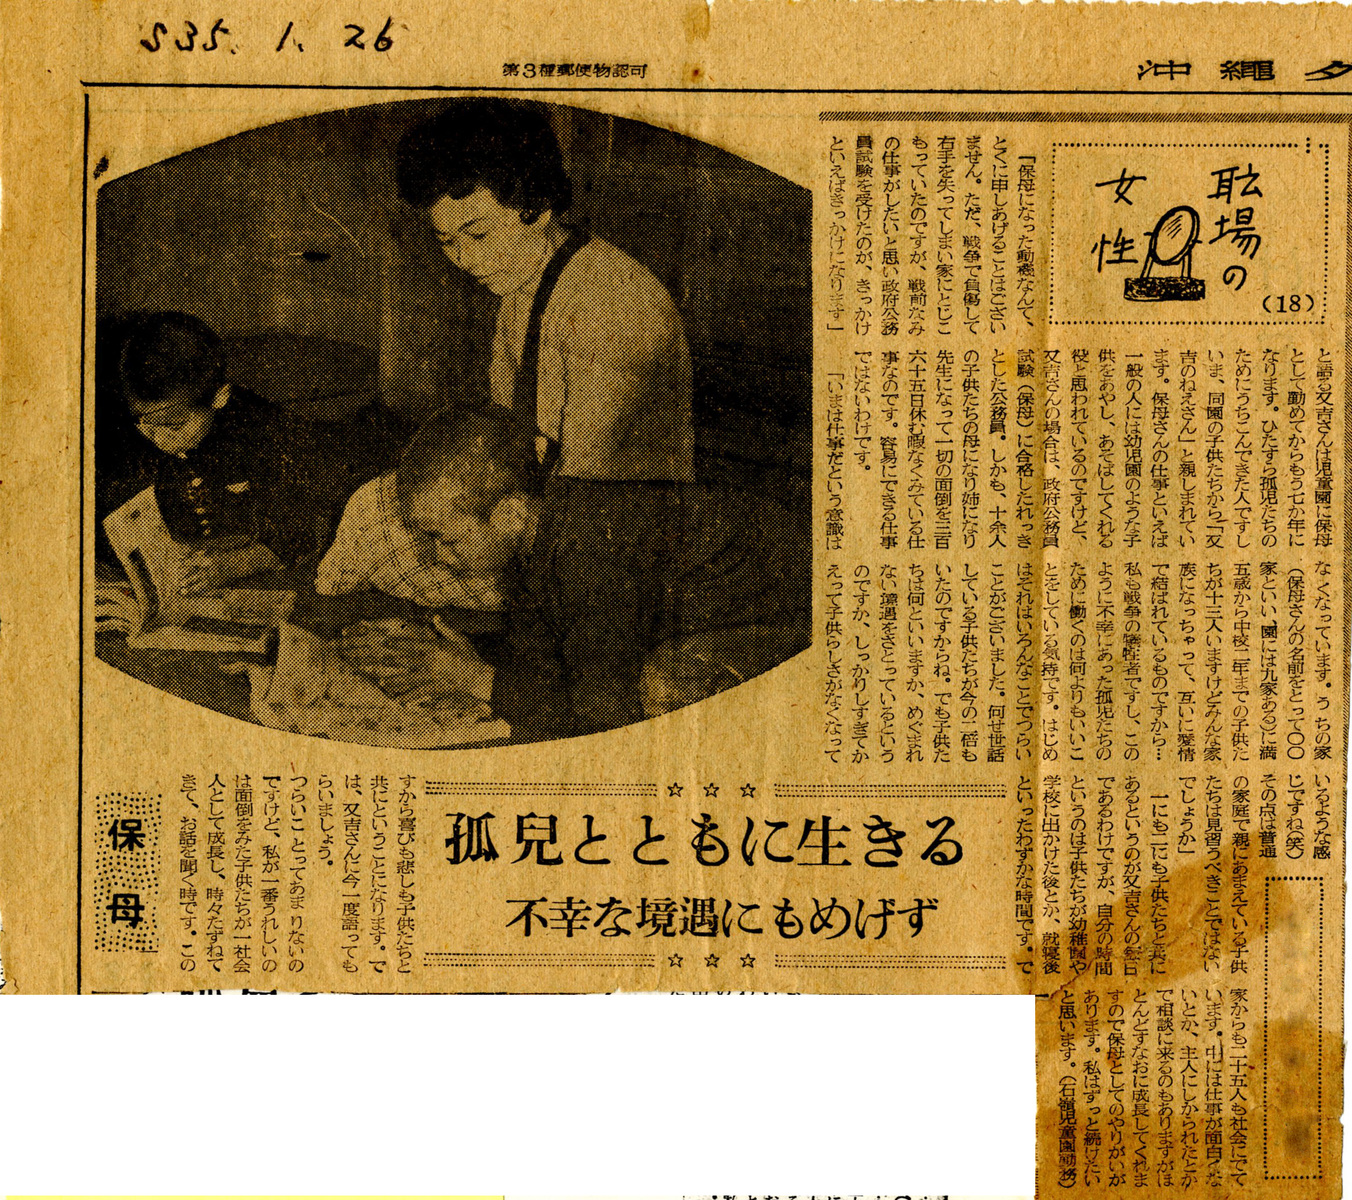 出展資料：新聞記事「沖縄タイムス　昭和35年1月26日」